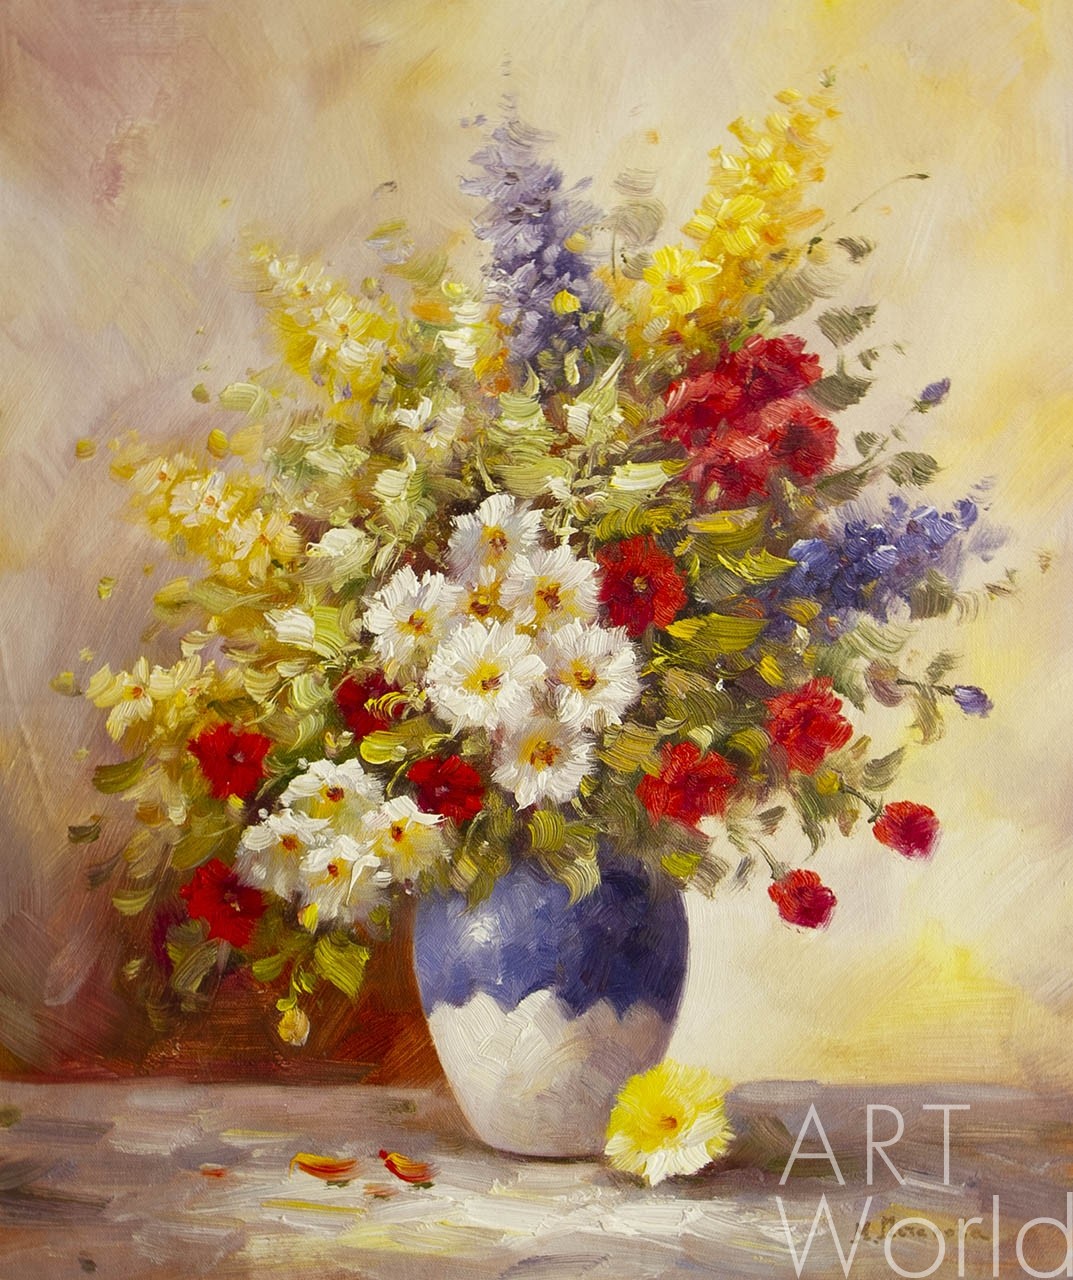 Картина Натюрморт маслом Букет из садовых цветов в вазе 50x60 MP200101  купить в Москве